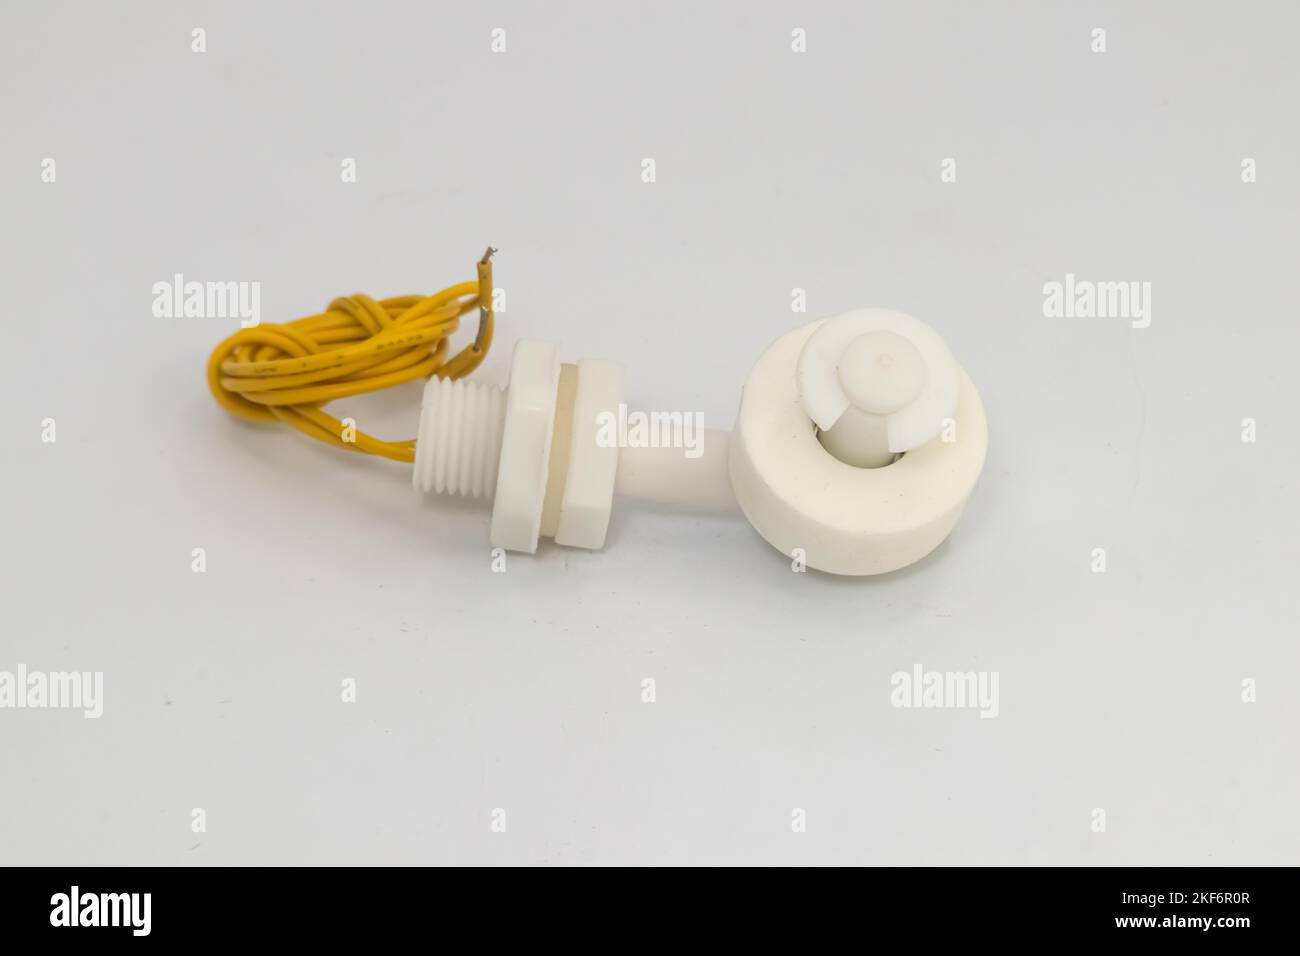 Wasser- oder Flüssigkeitsstandssensor mit Schwimmerschalter und gelbem Kabel. Dieser Sensor wird als Heimwerkermaterial für Elektronikbastler verwendet. Stockfoto